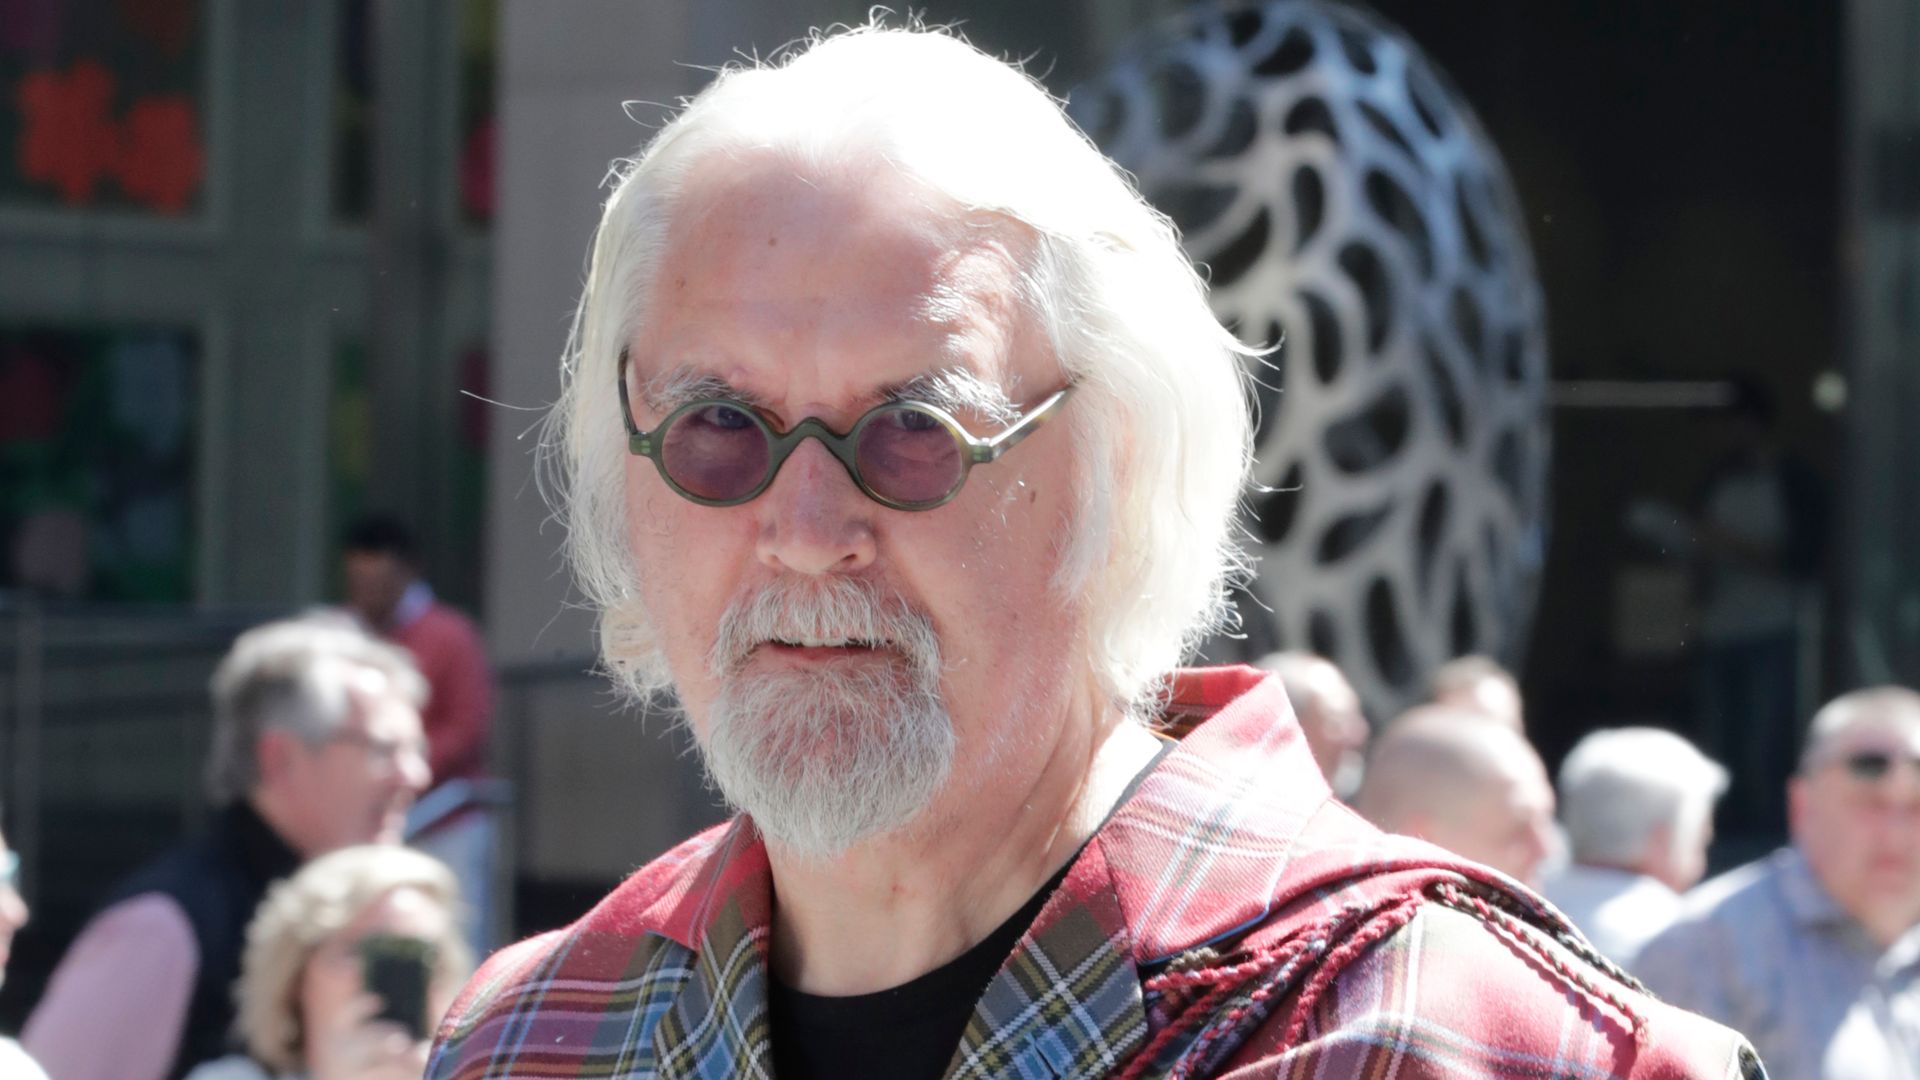 Billy Connolly in a tartan shirt